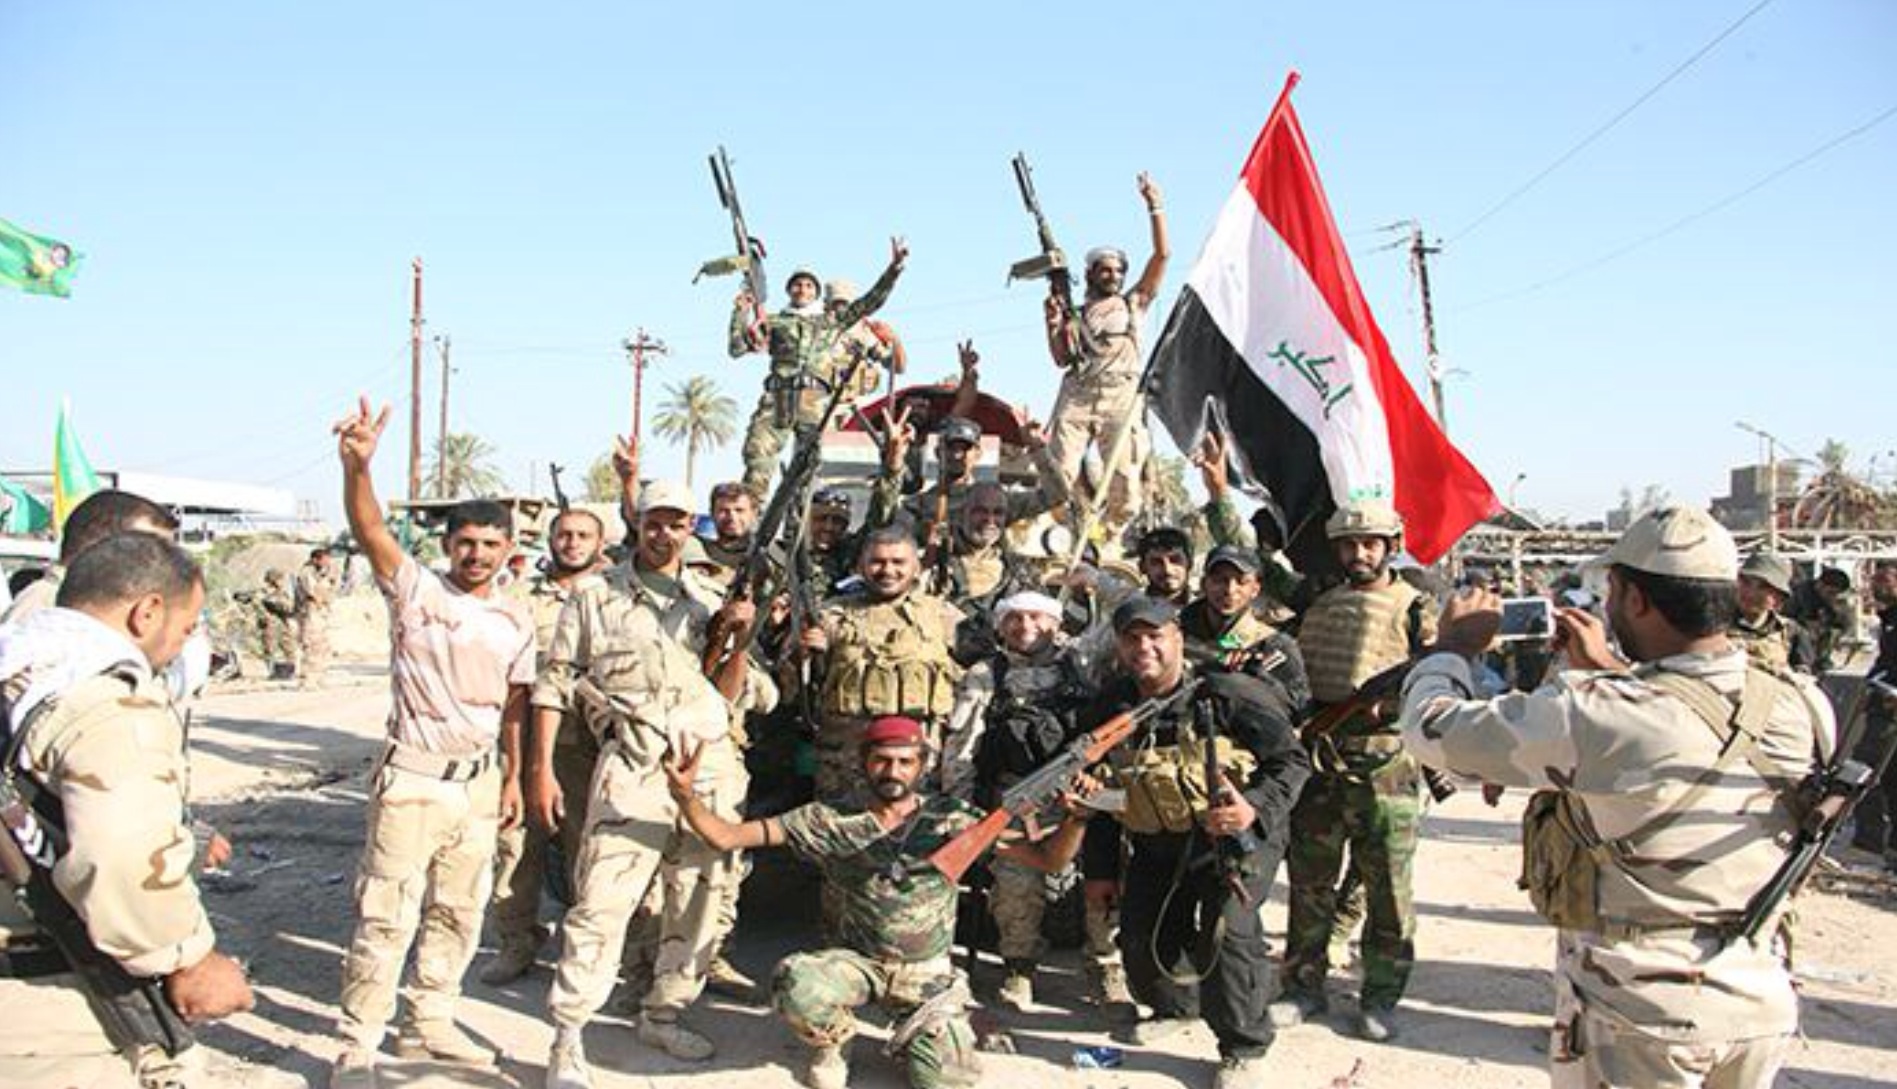 العراق يضم قوات "الحشد الشعبي" رسميا إلى الجيش